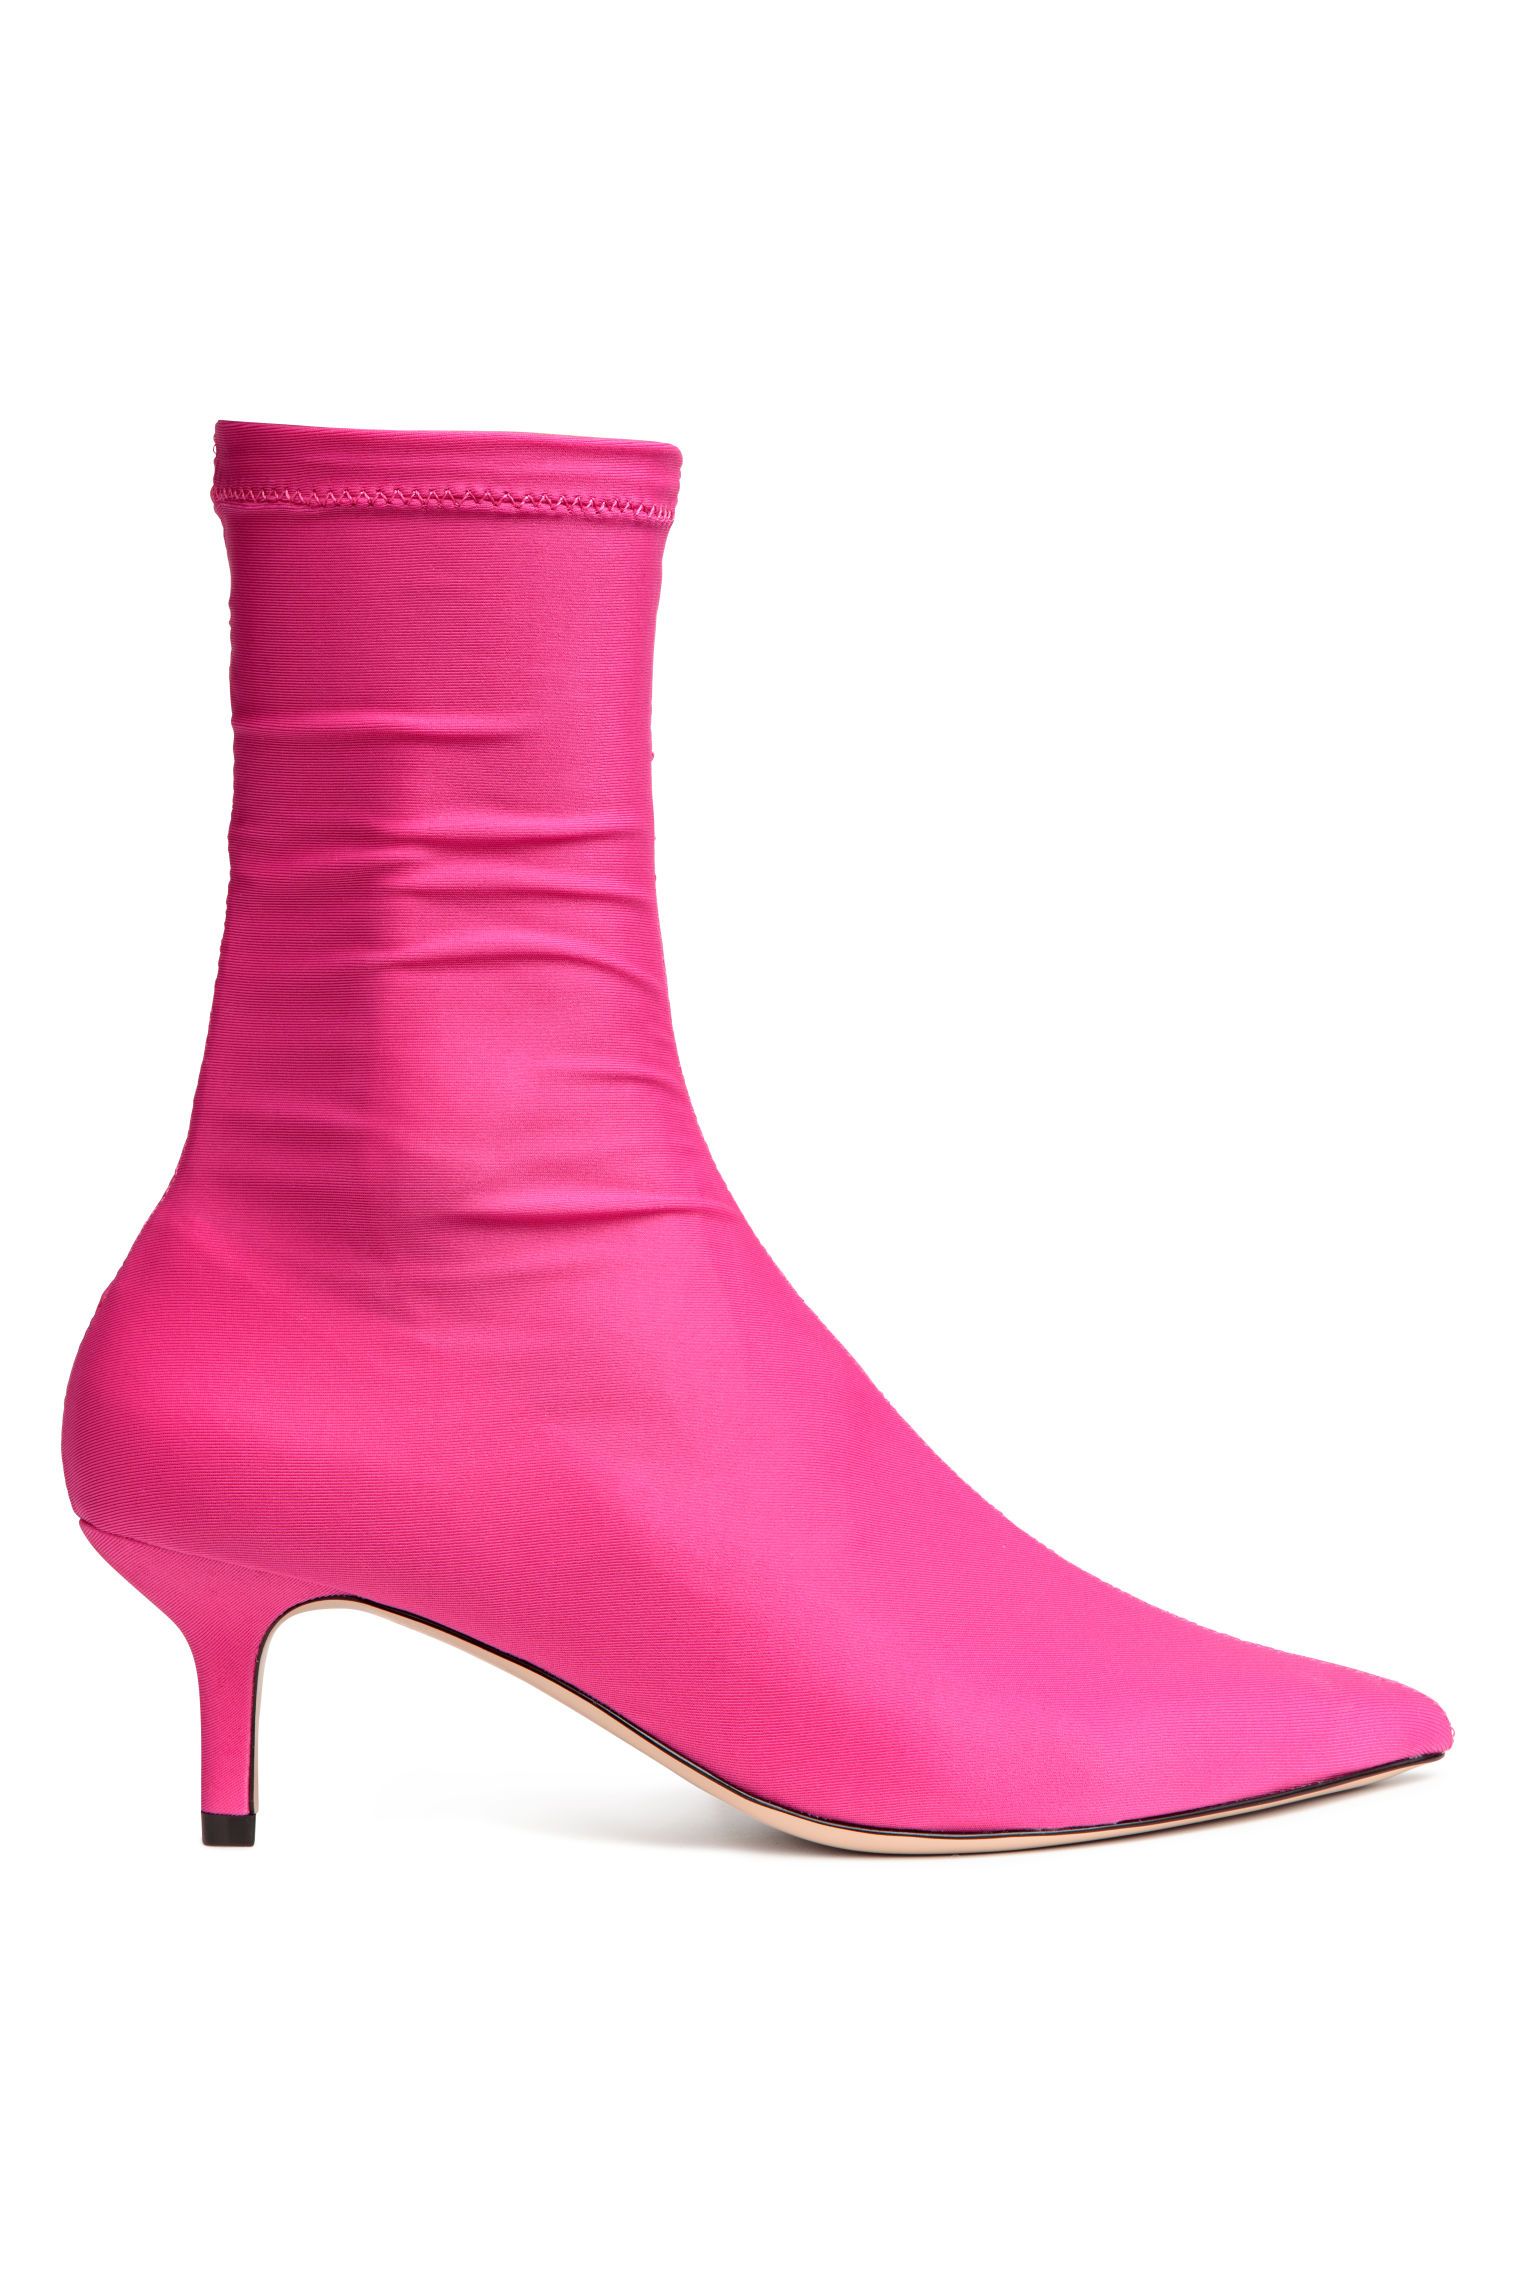 #PopbelaOOTD: Sepatu Cantik untuk Kencan di Hari Valentine 